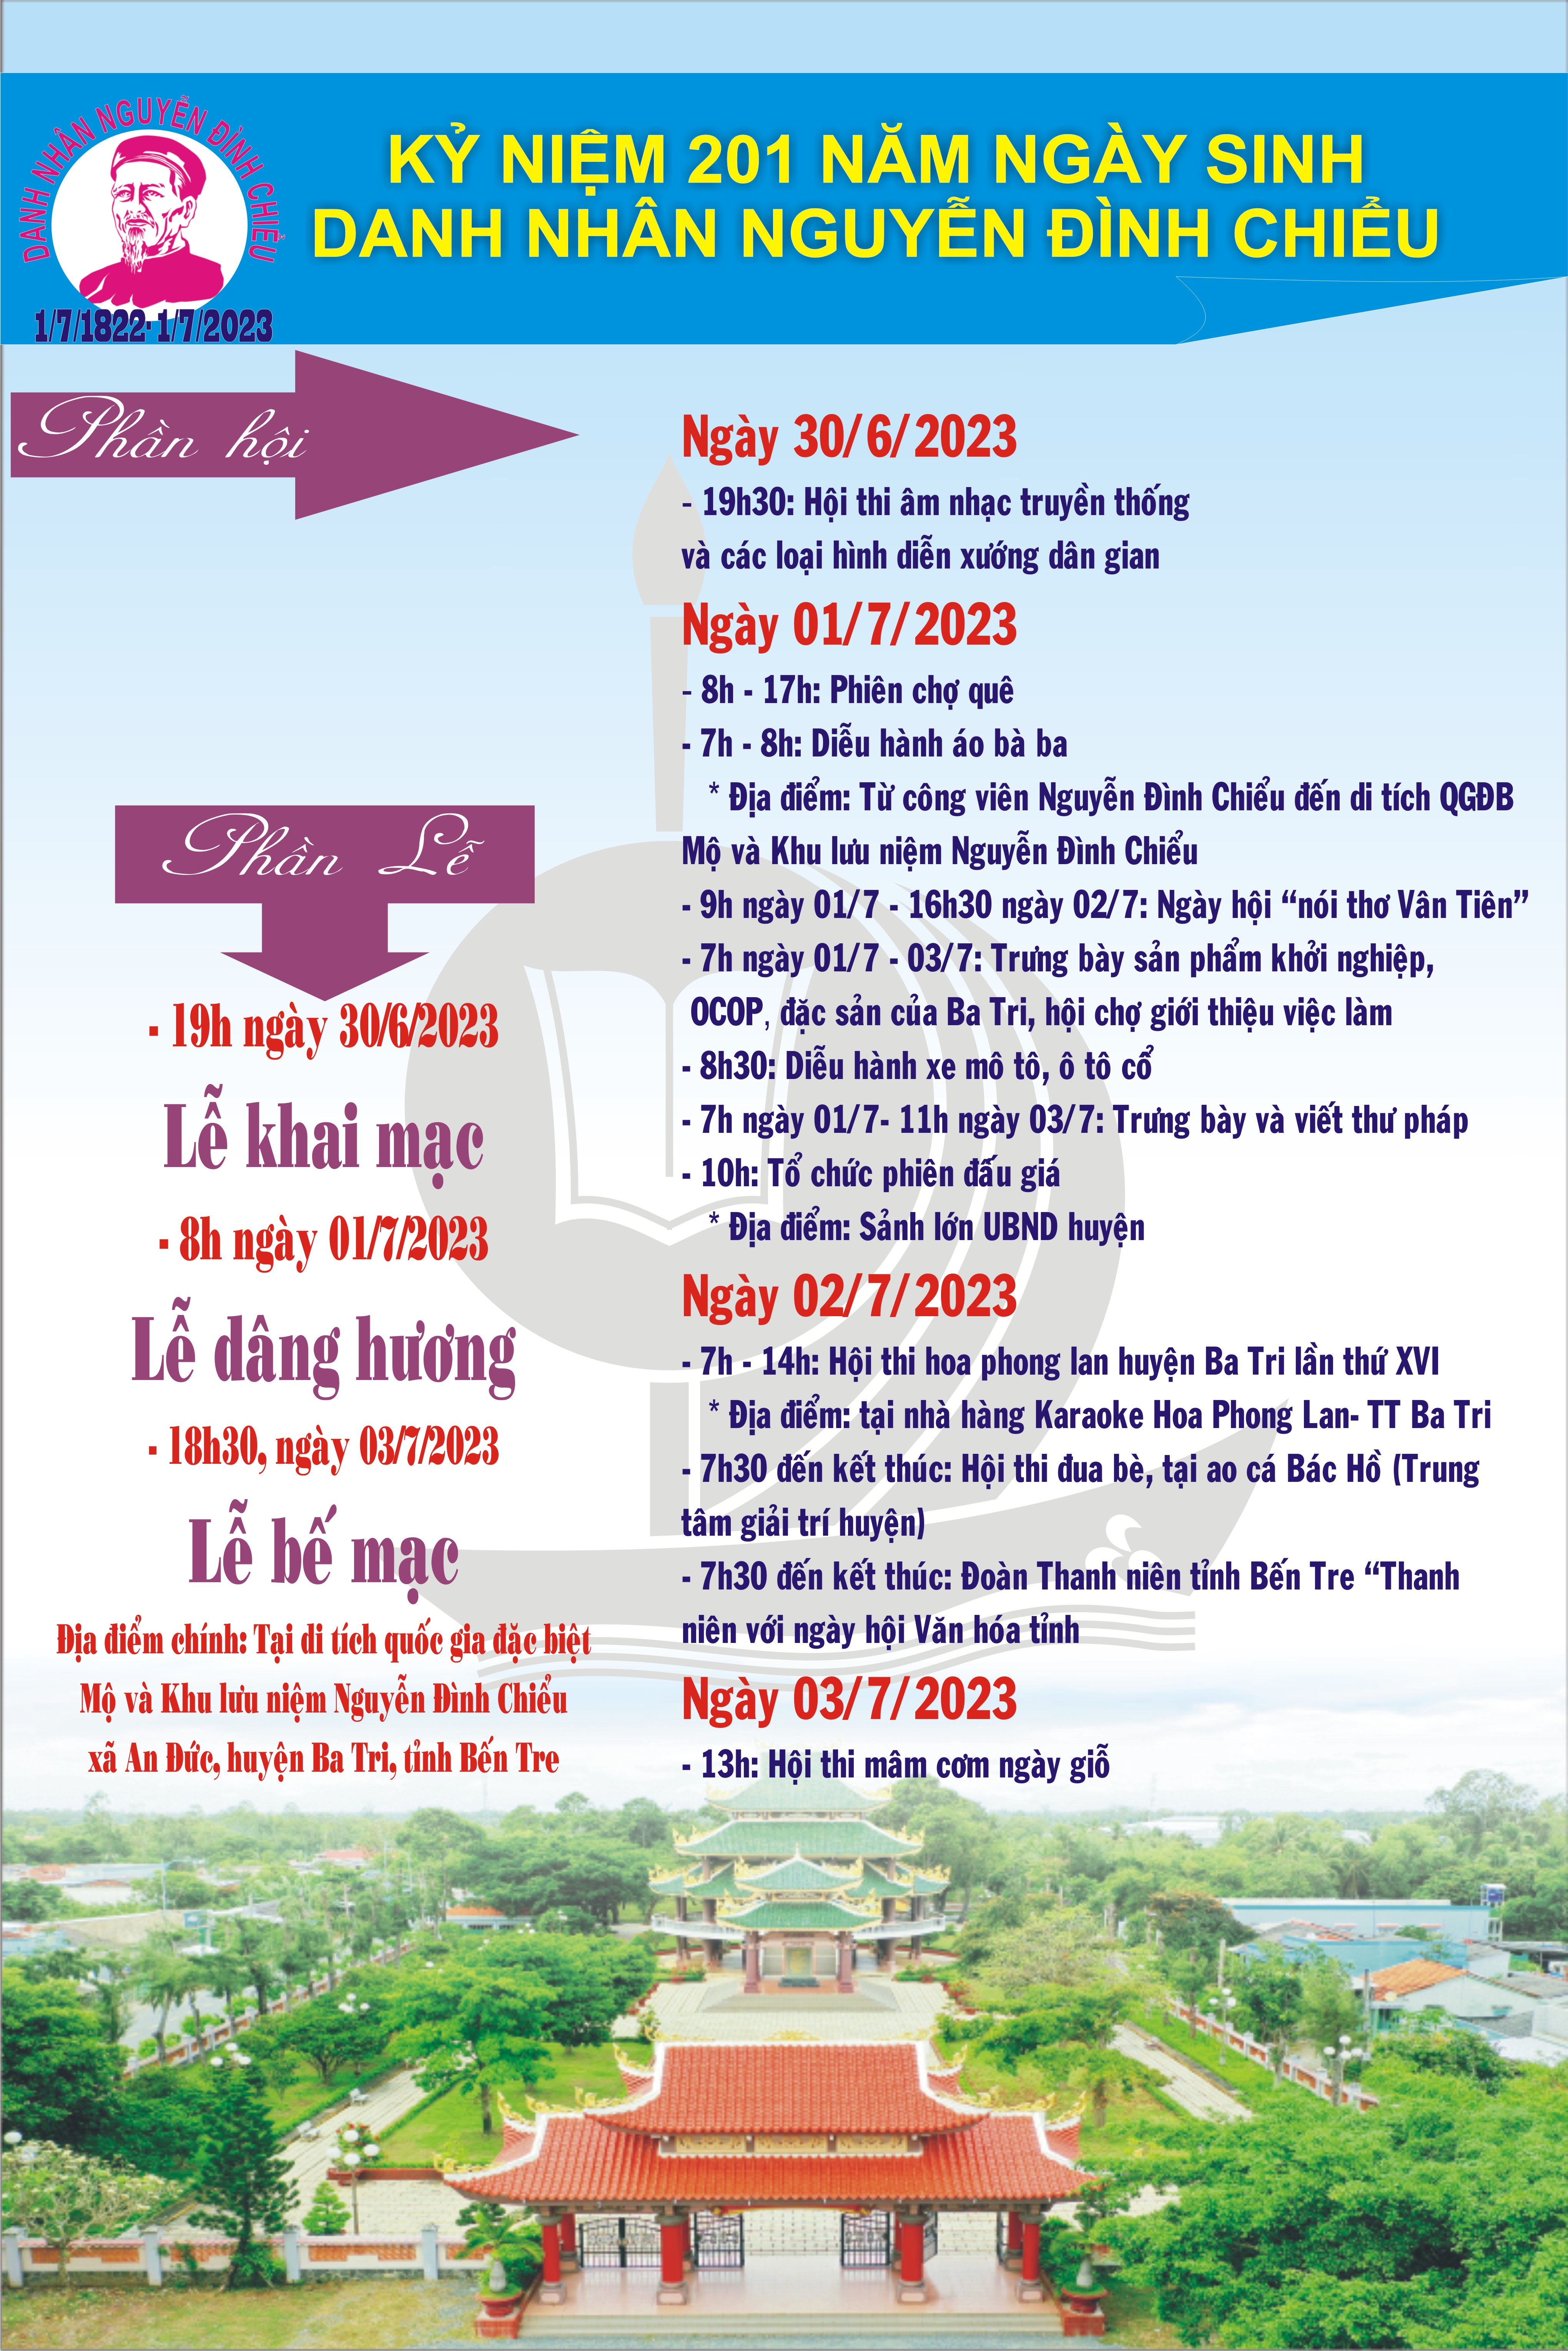 Chương trình Kỷ niệm 201 năm ngày sinh Danh nhân Nguyễn Đình Chiểu